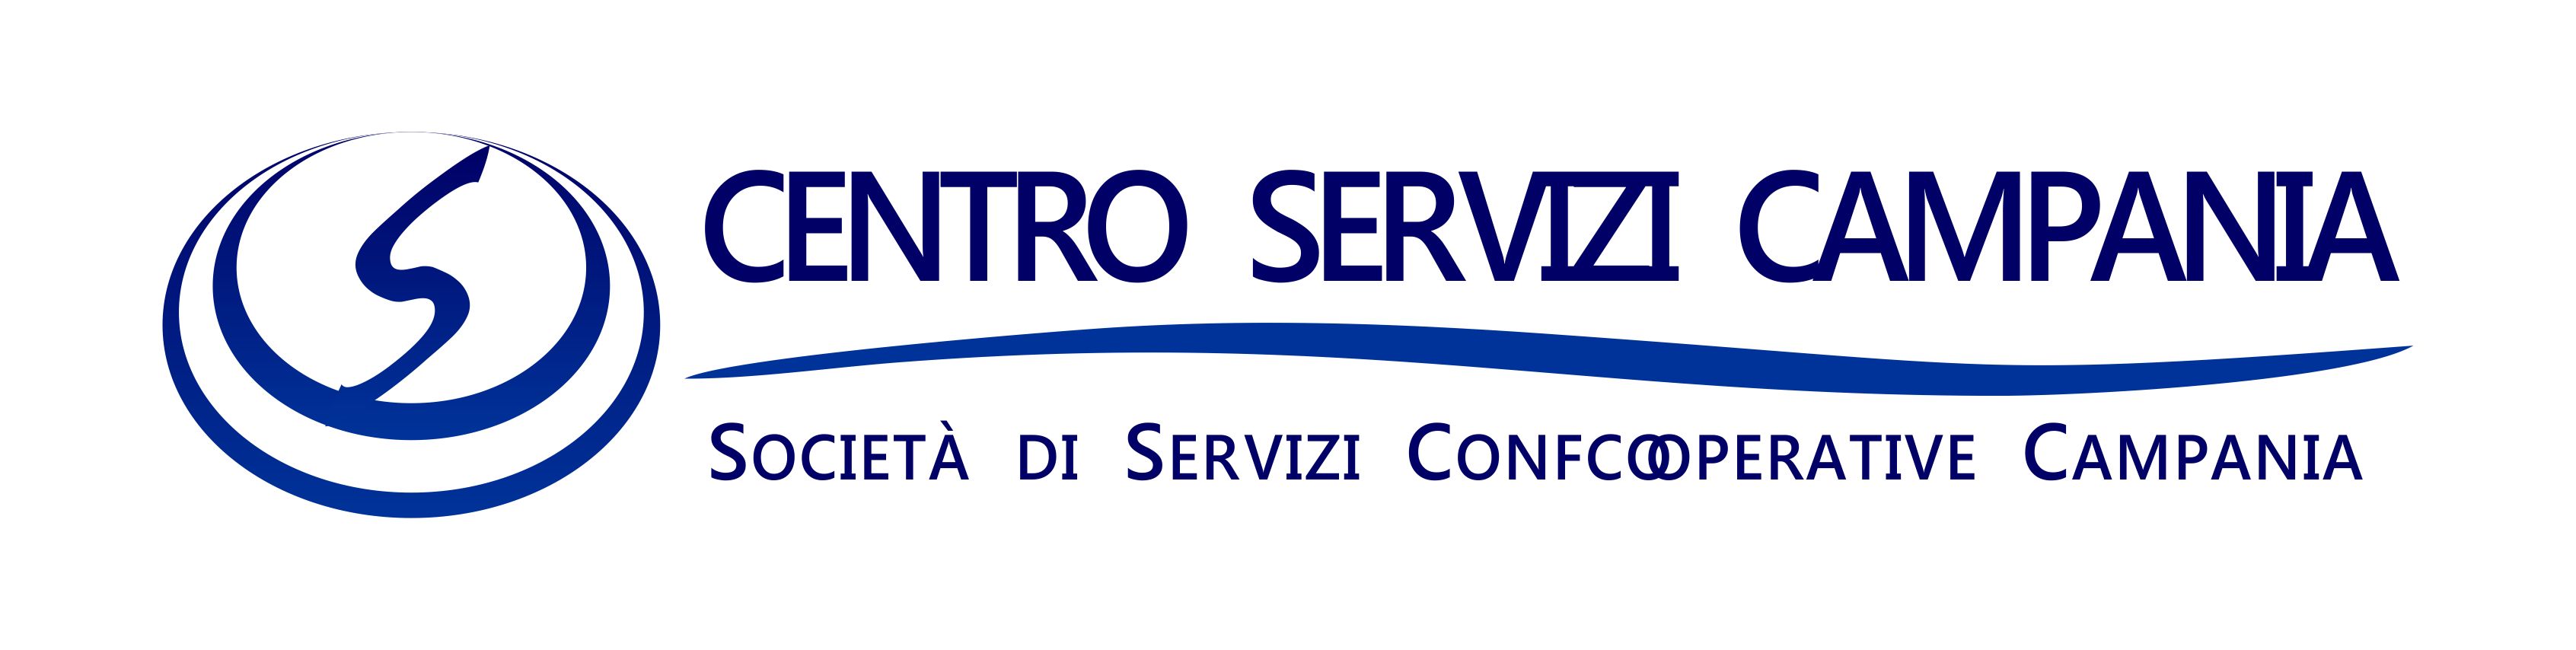 Centro Servizi Campania: verso lo start-up